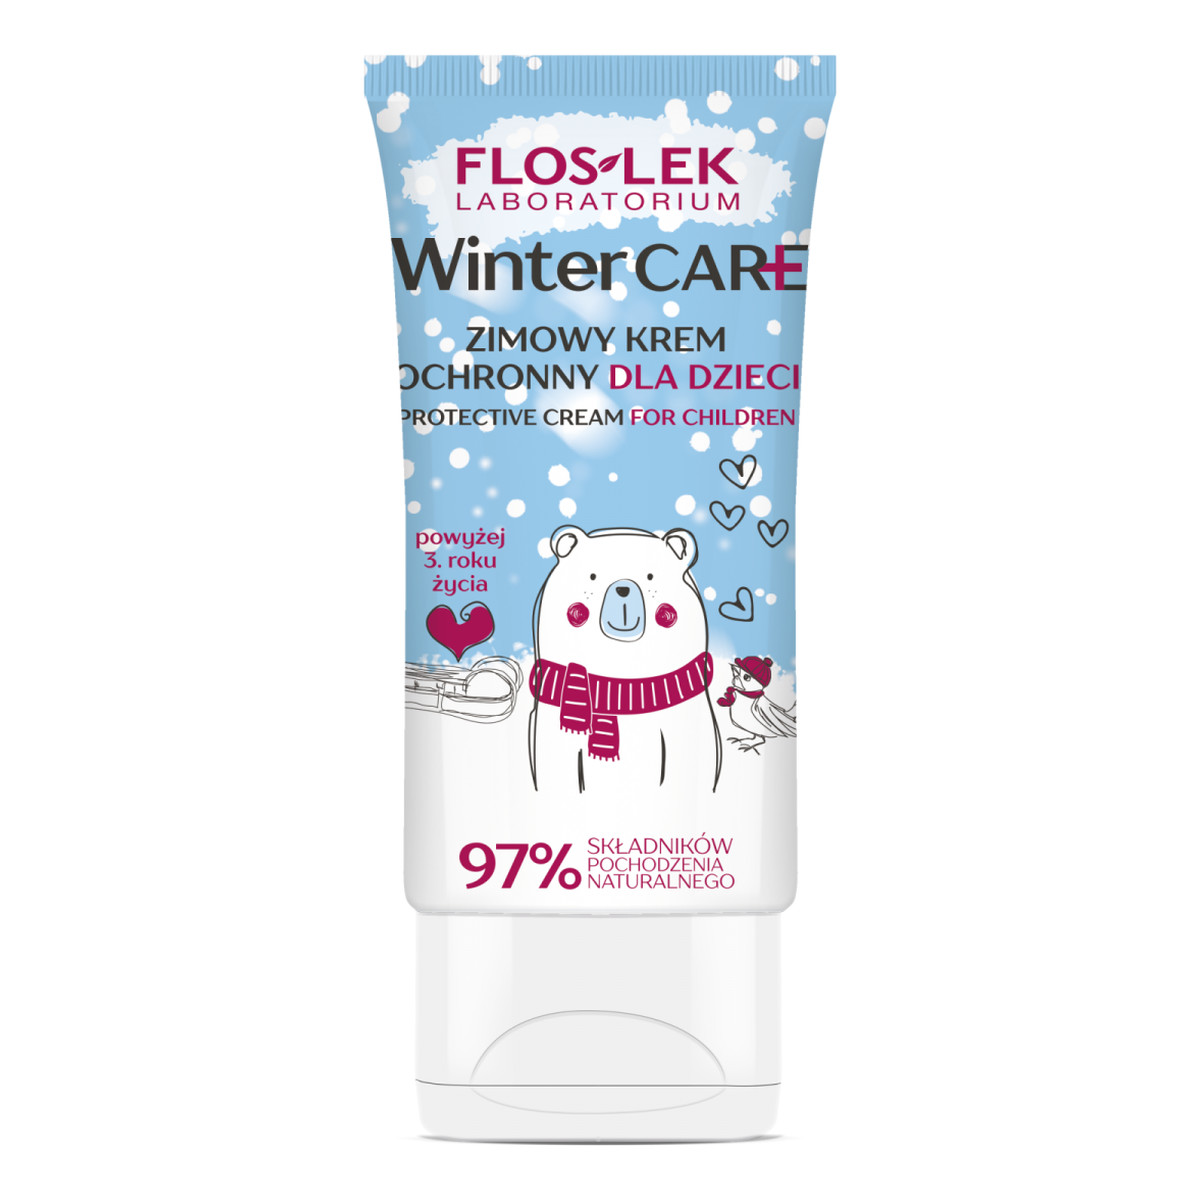 FlosLek Winter Care zimowy krem ochronny dla dzieci 50ml